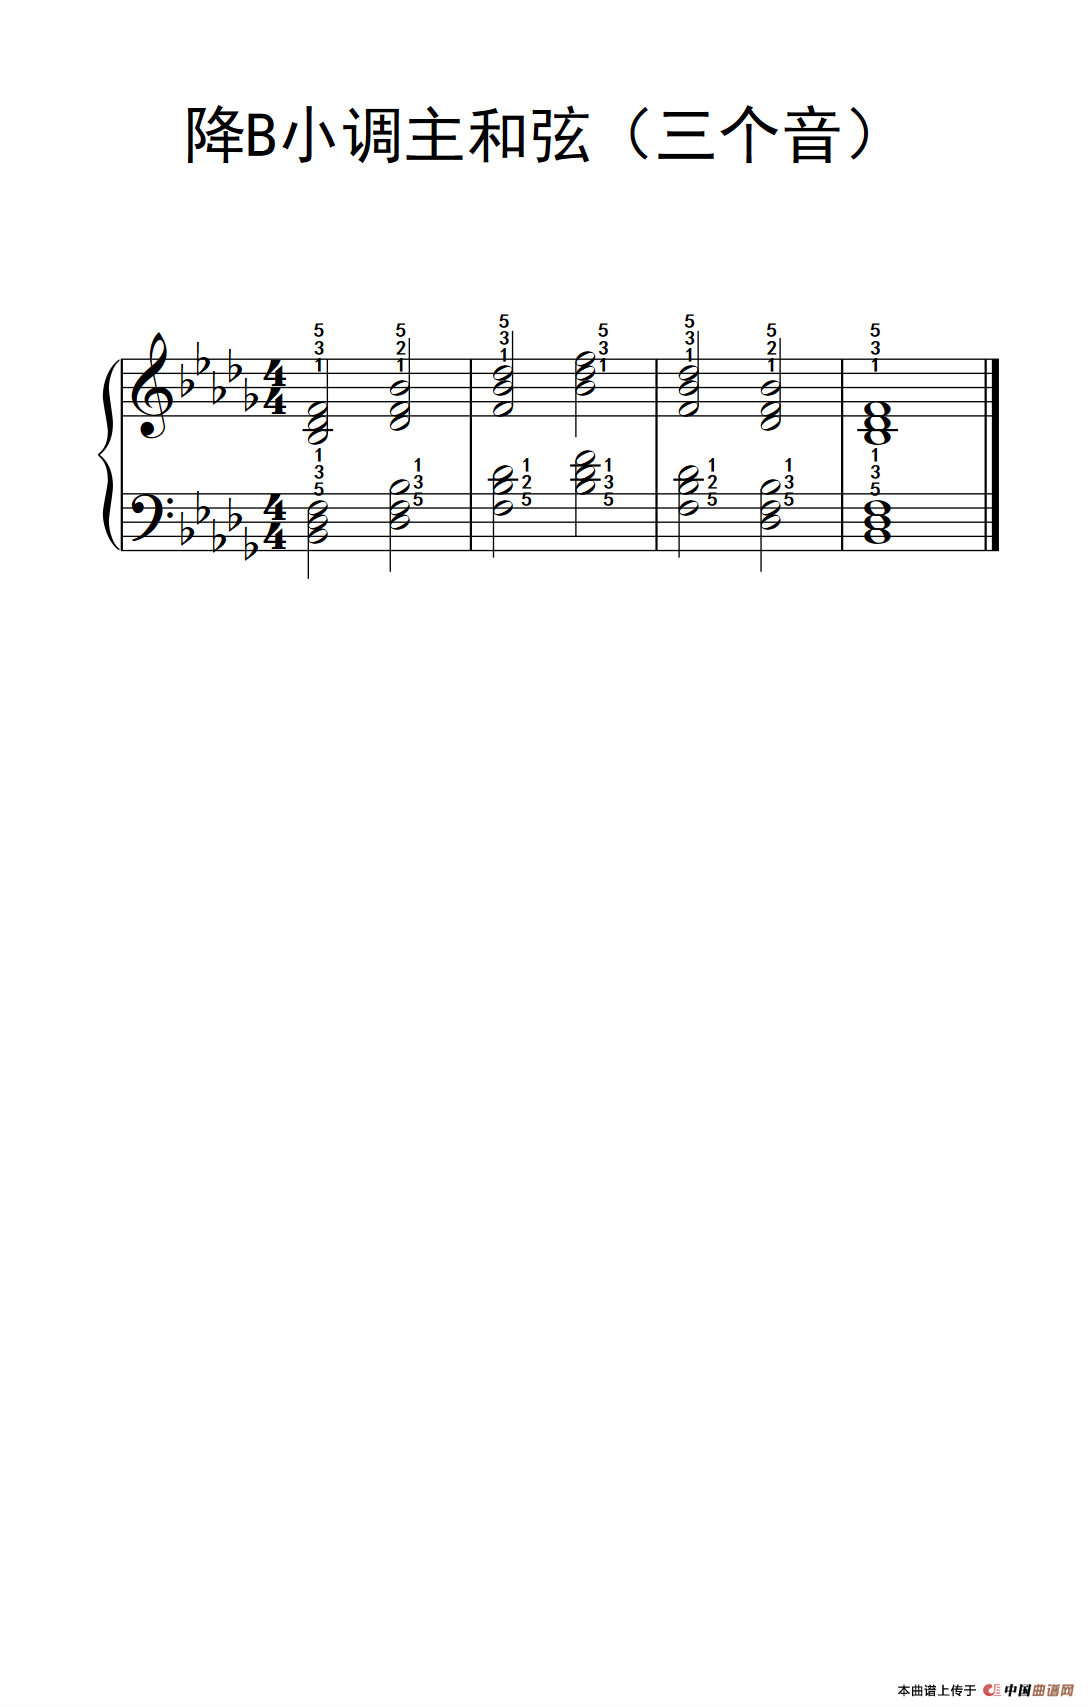 降b小调主和弦(三个音)(孩子们的钢琴音阶,和弦与琶音 2)